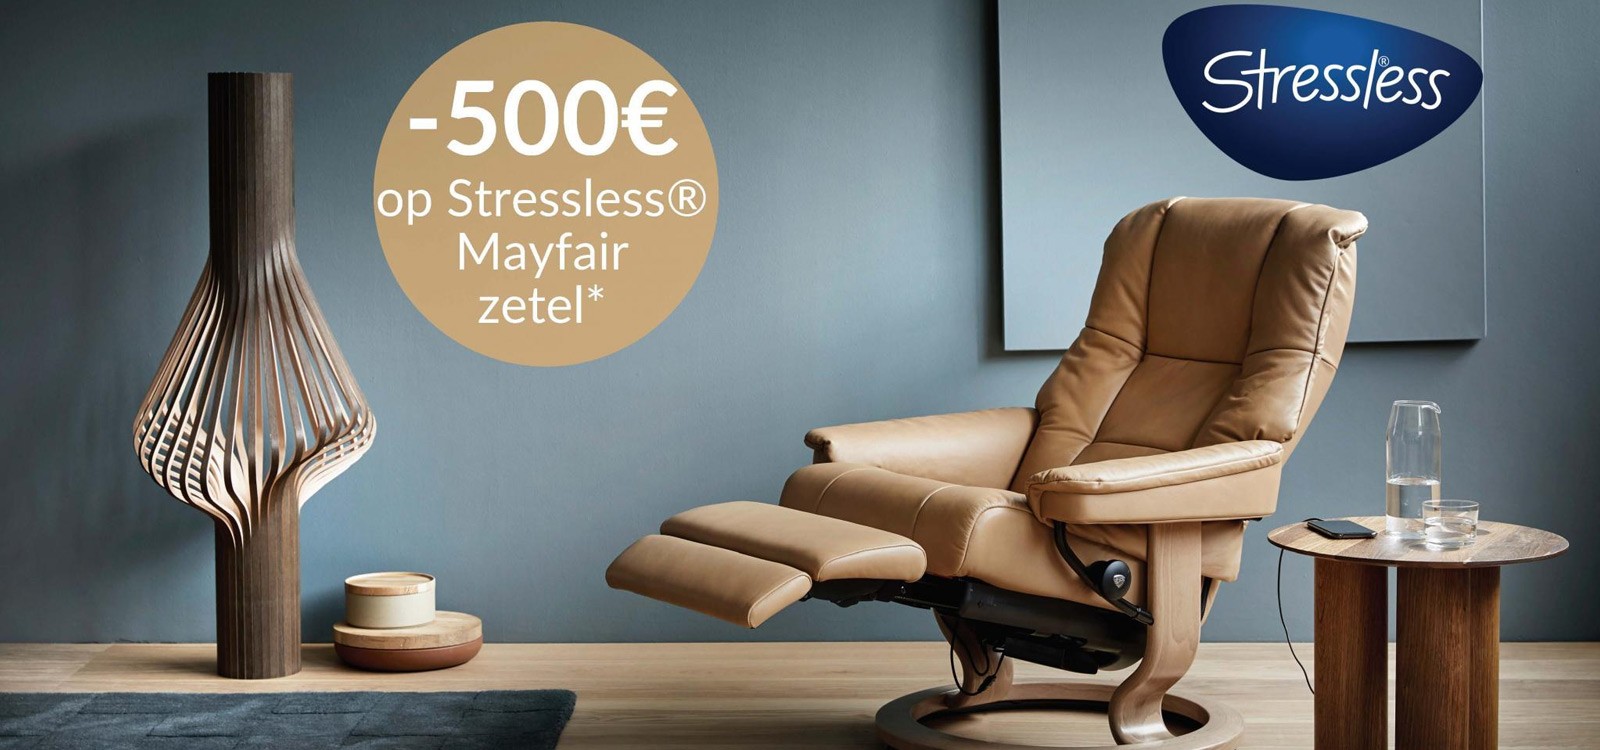 Ongewijzigd geroosterd brood Aanbeveling Stressless Mayfair relax met 500 euro korting | Bedking